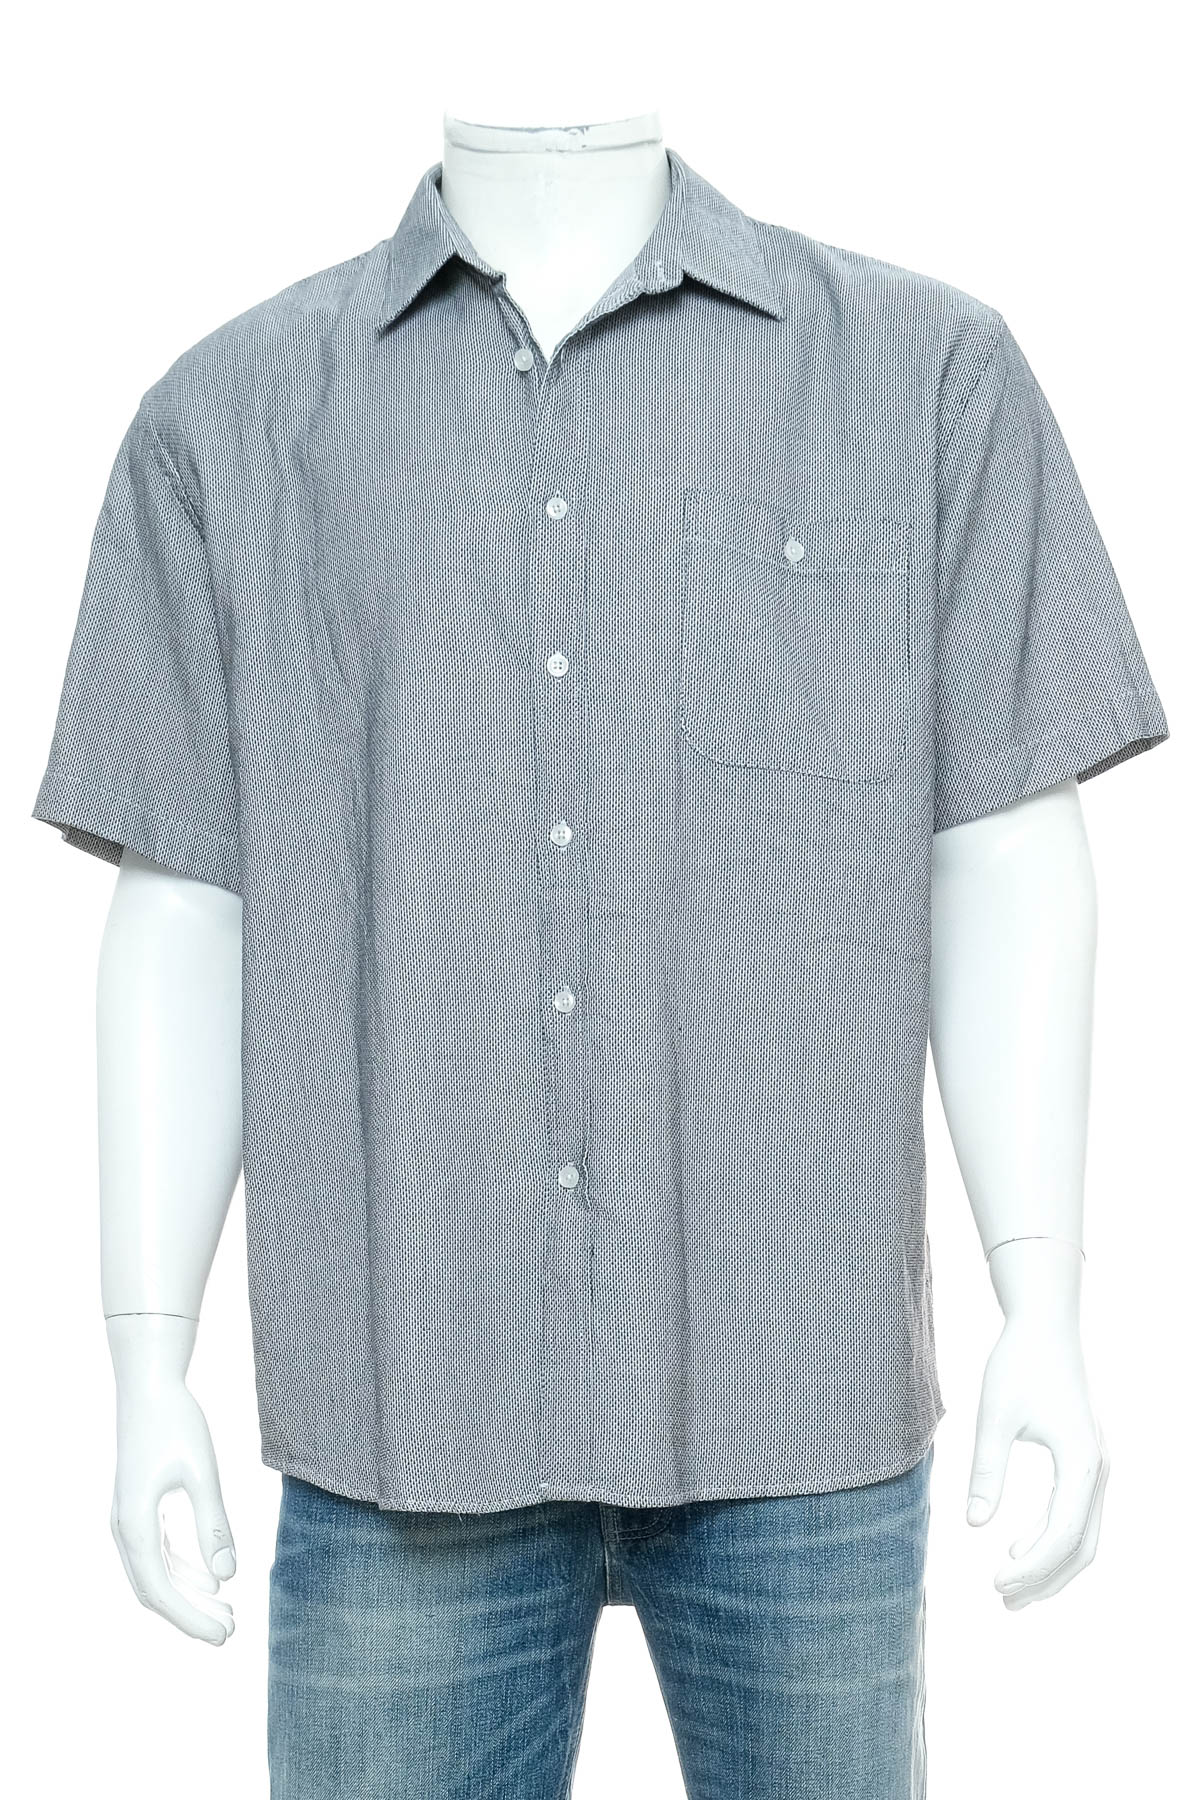 Ανδρικό πουκάμισο - Platinum - 0